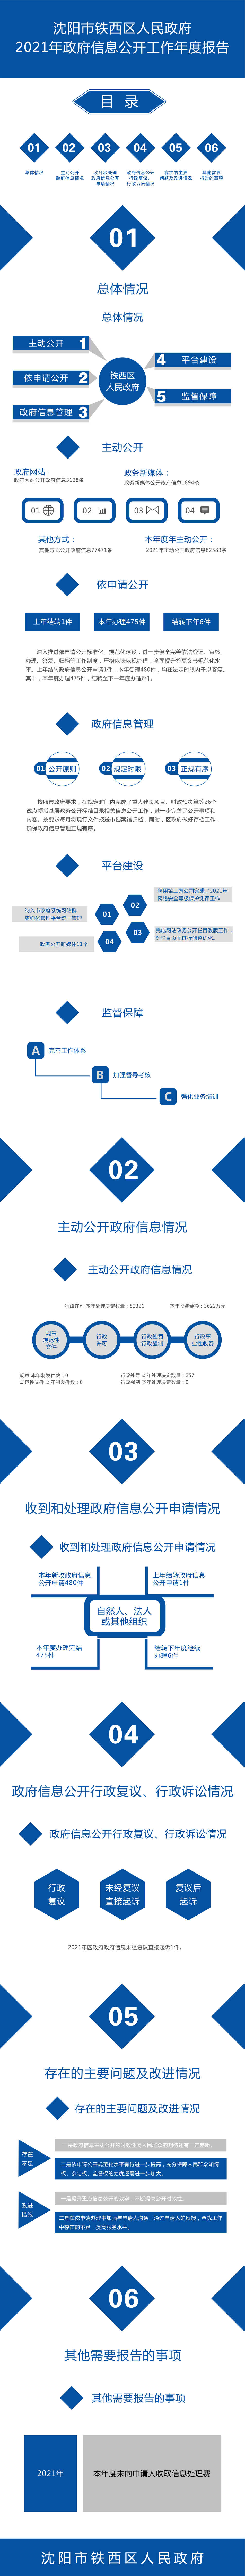 沈阳市铁西区人民政府2021年政府信息公开工作年度报告（图解版）.jpg